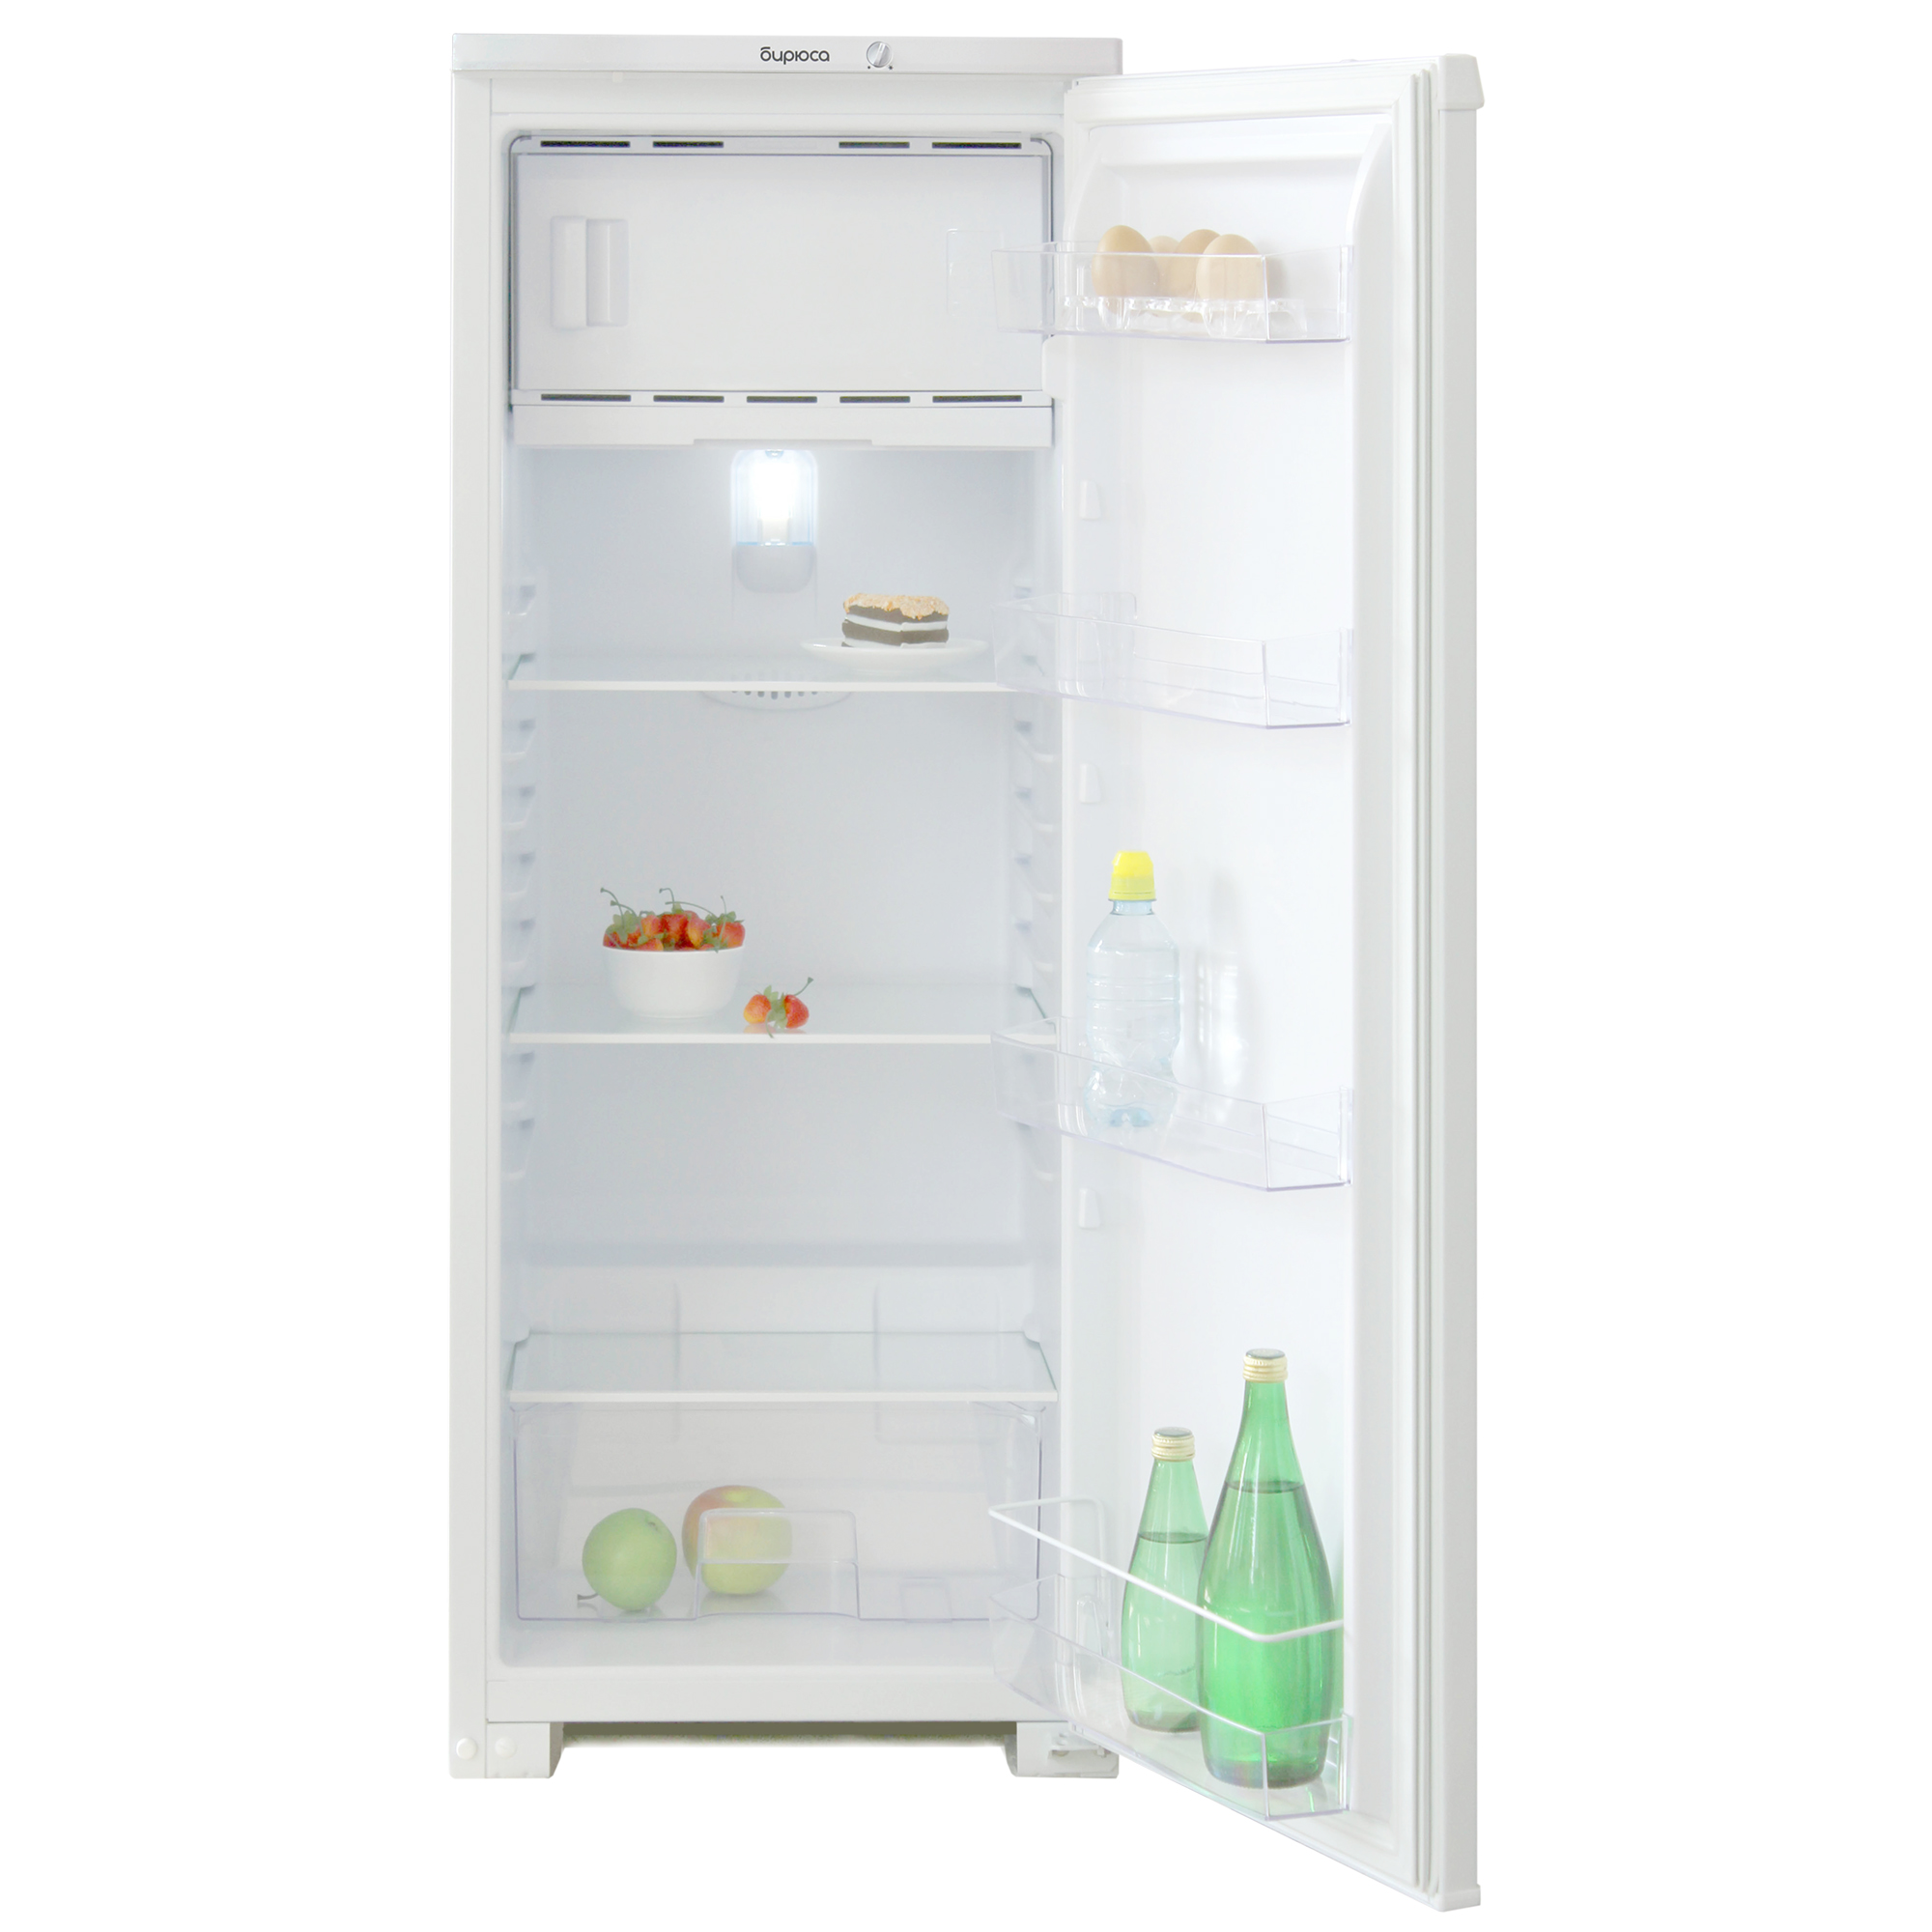 Узкий однокамерный холодильник Бирюса 110